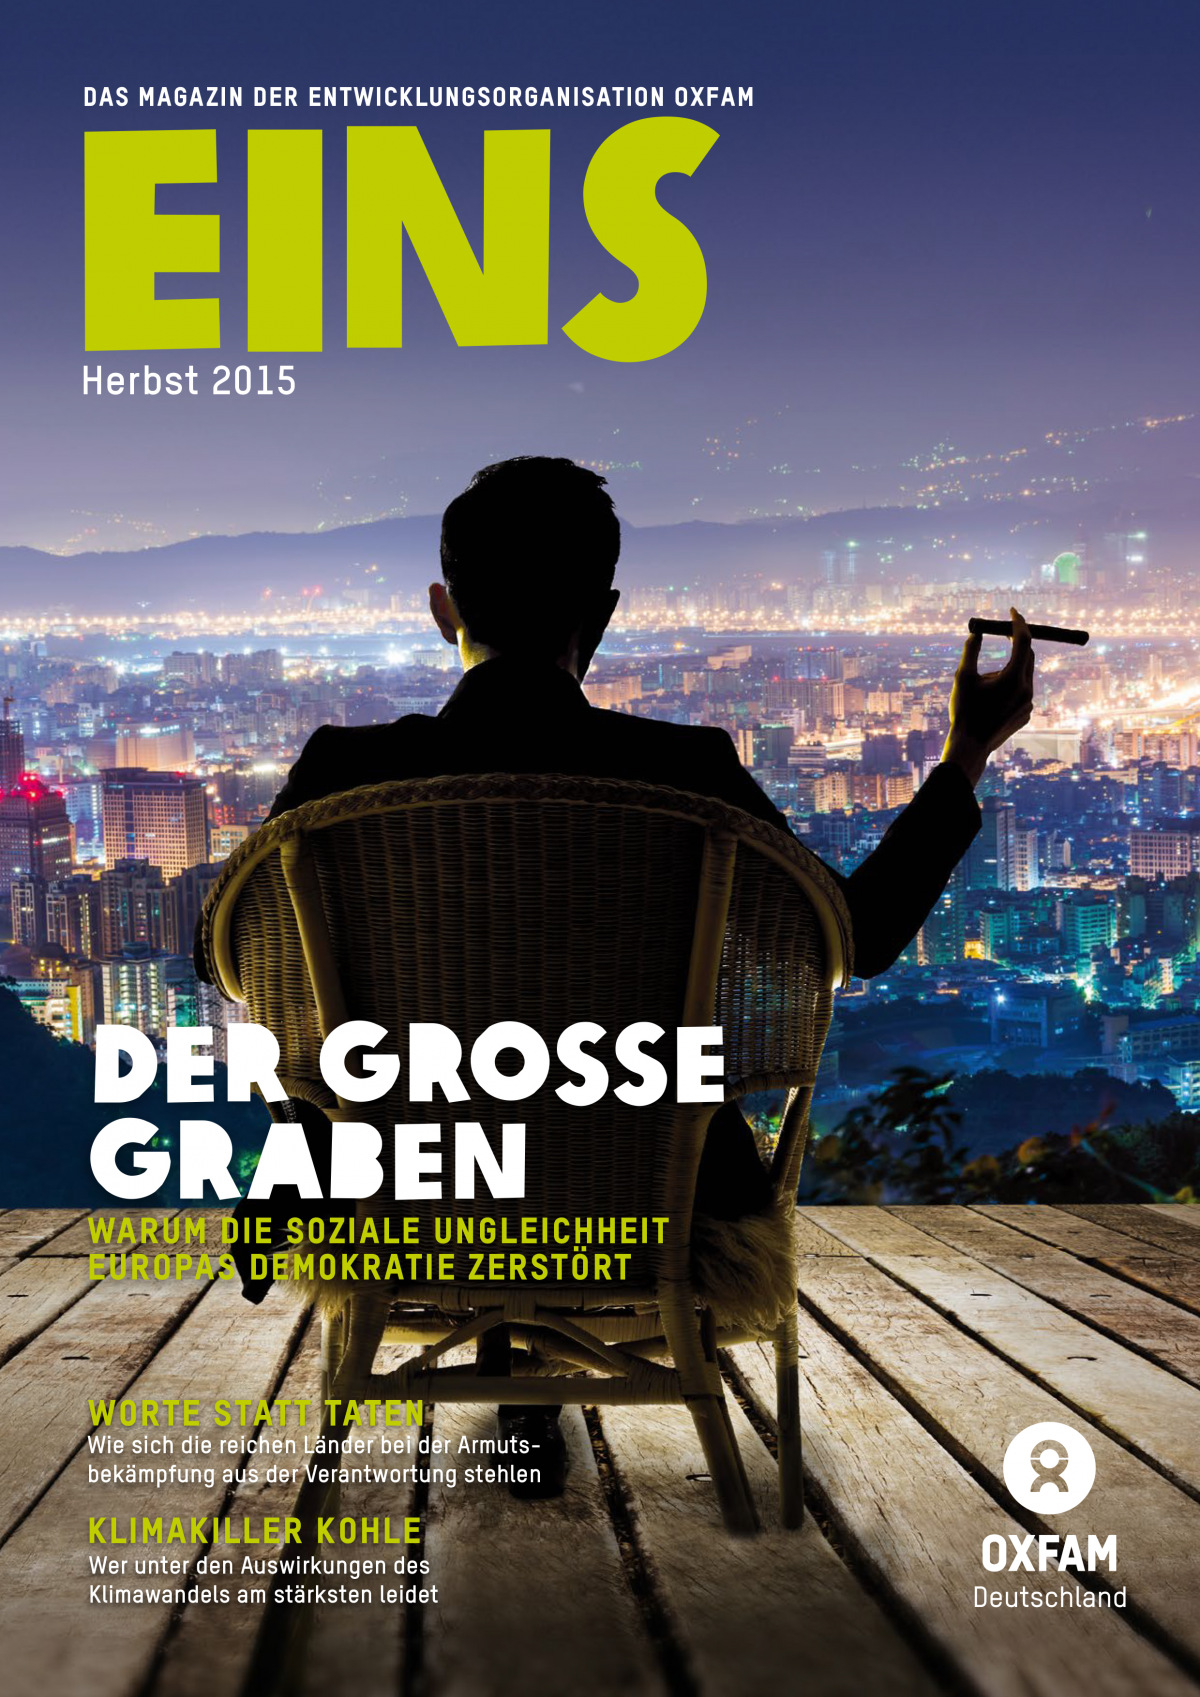 Titelbild vom Oxfam-Magazin EINS (Herbst 2015)